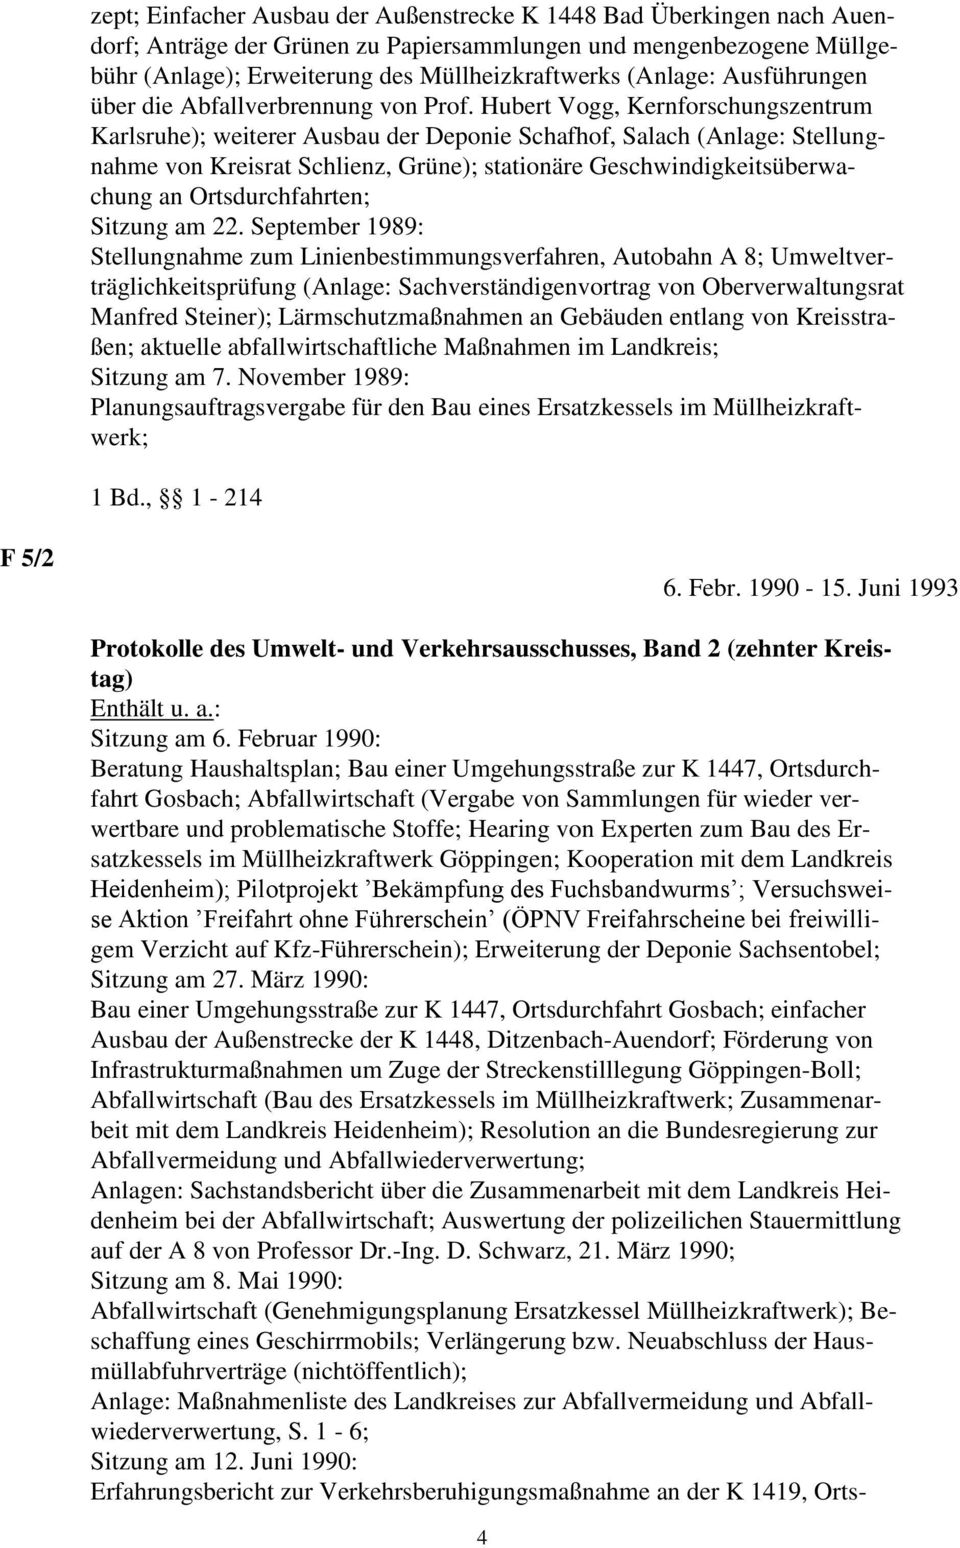 Hubert Vogg, Kernforschungszentrum Karlsruhe); weiterer Ausbau der Deponie Schafhof, Salach (Anlage: Stellungnahme von Kreisrat Schlienz, Grüne); stationäre Geschwindigkeitsüberwachung an